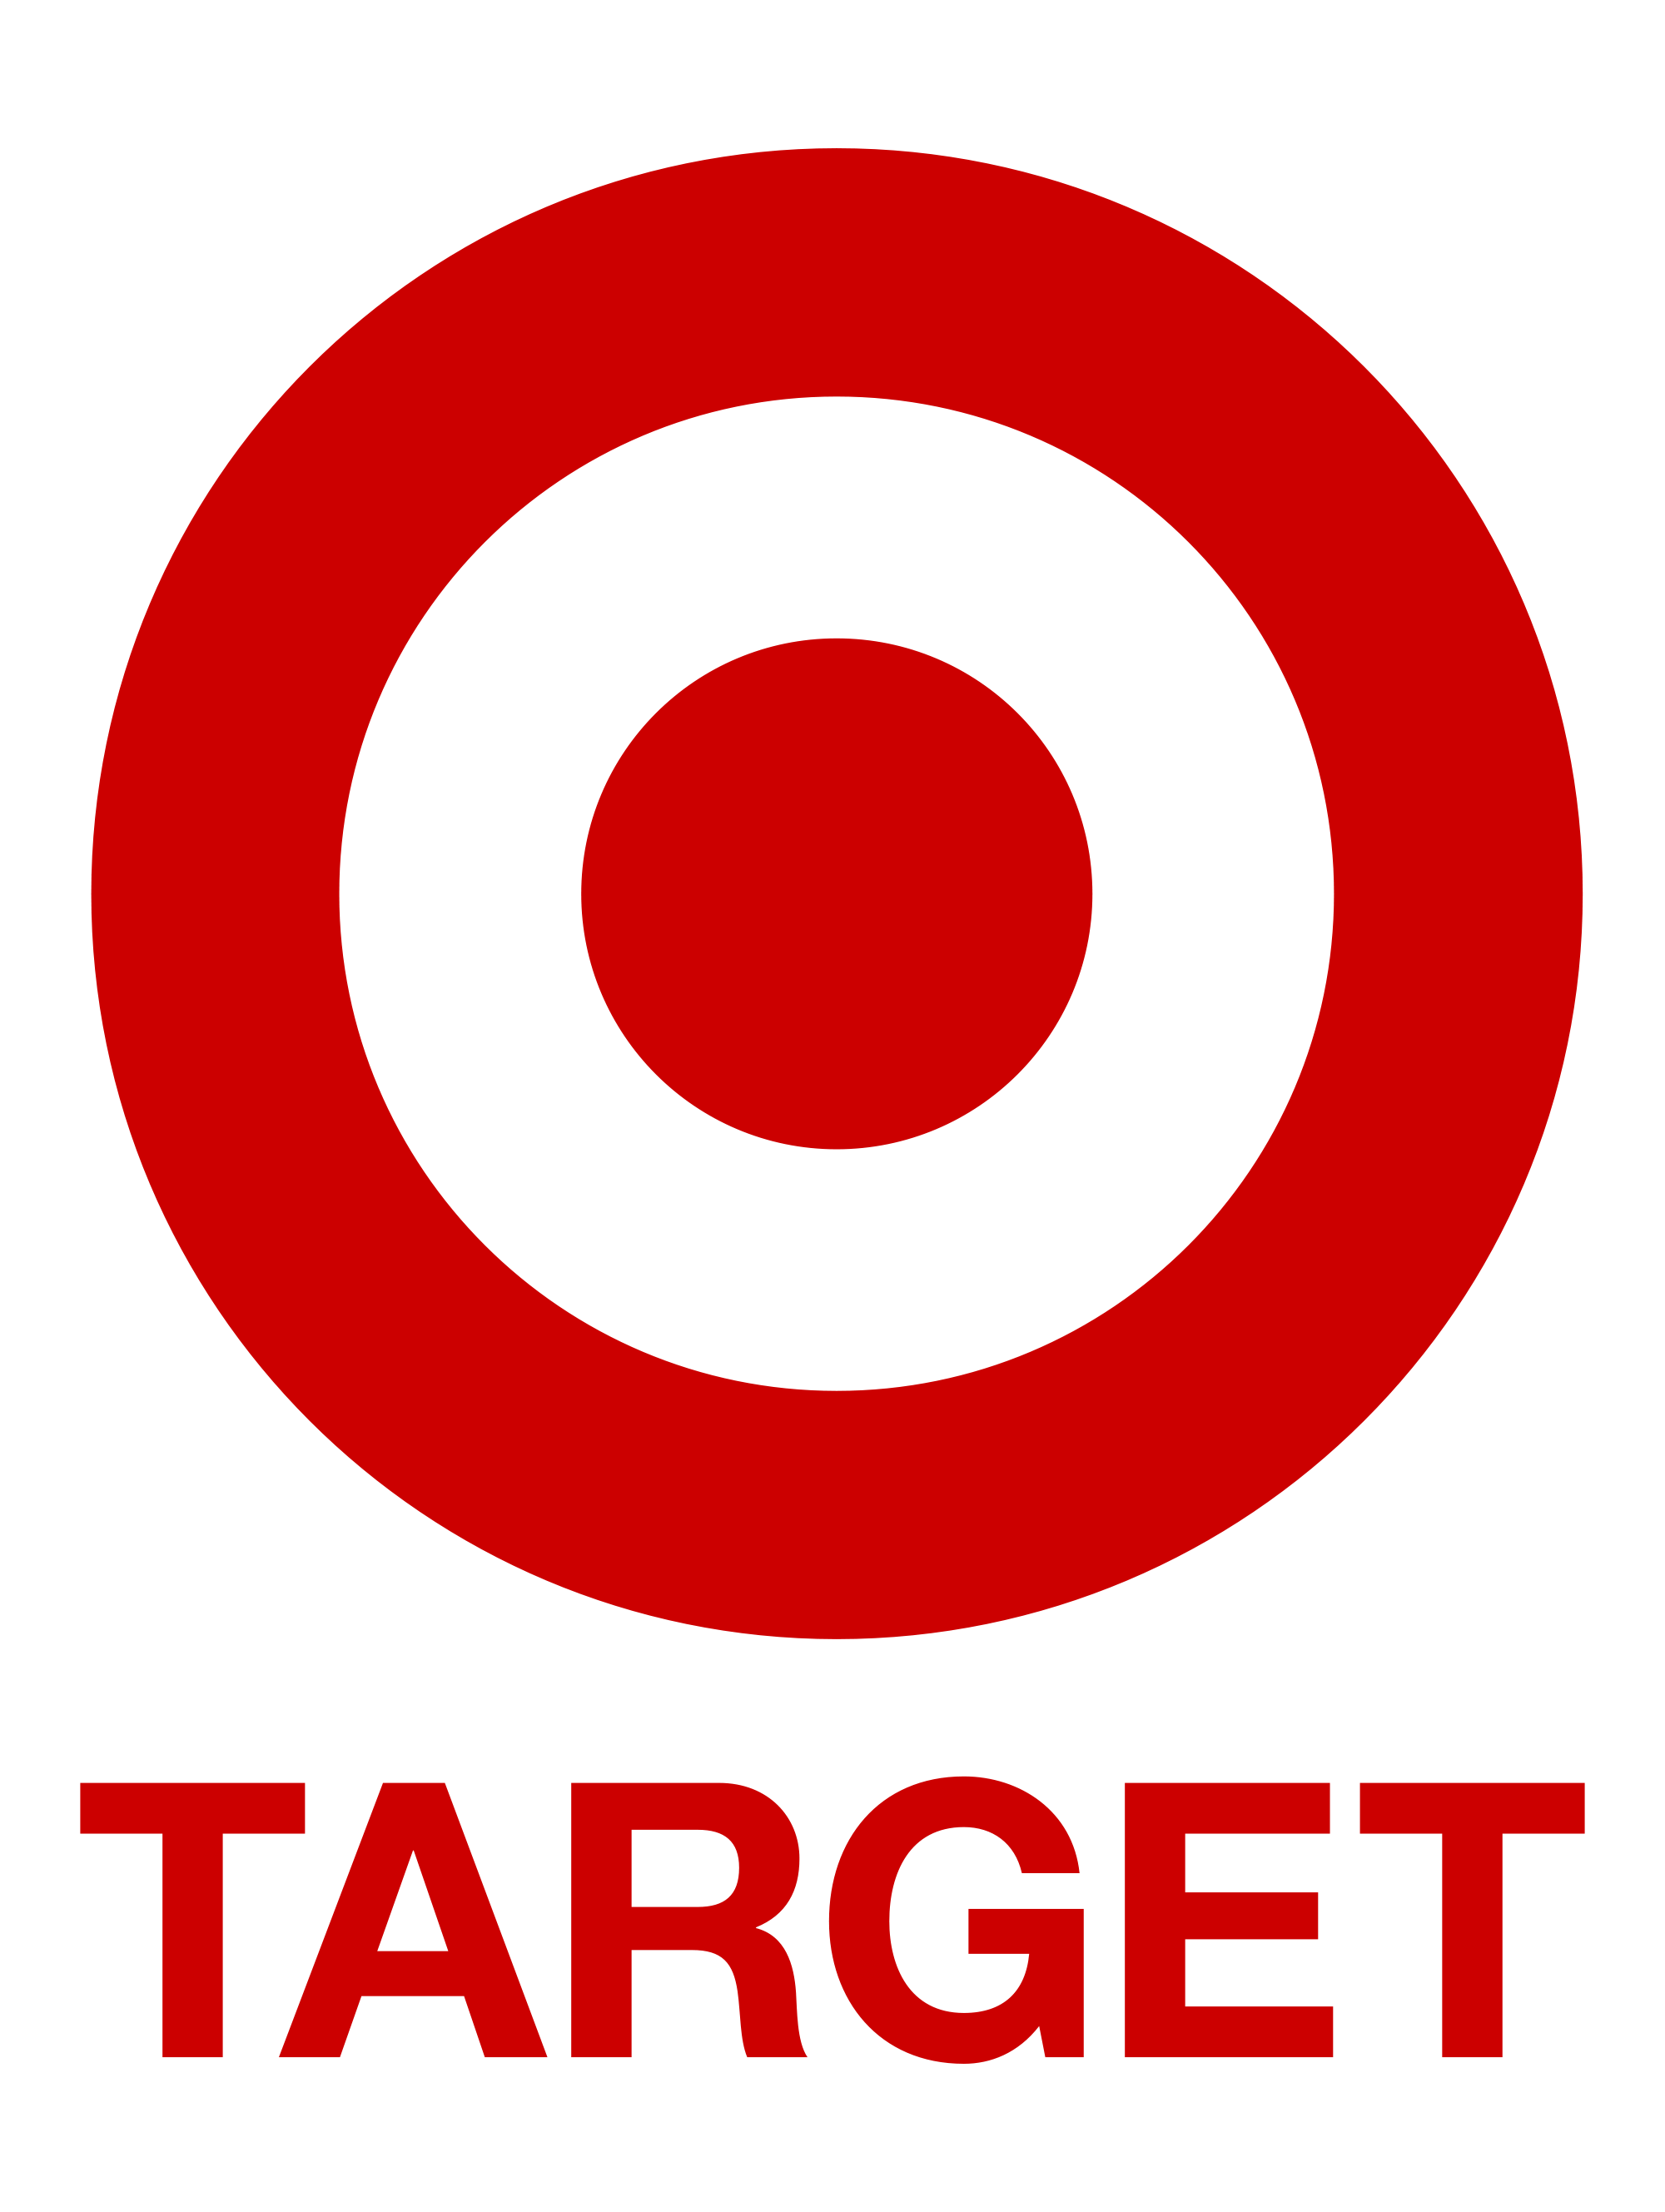 A_Target_logo.png